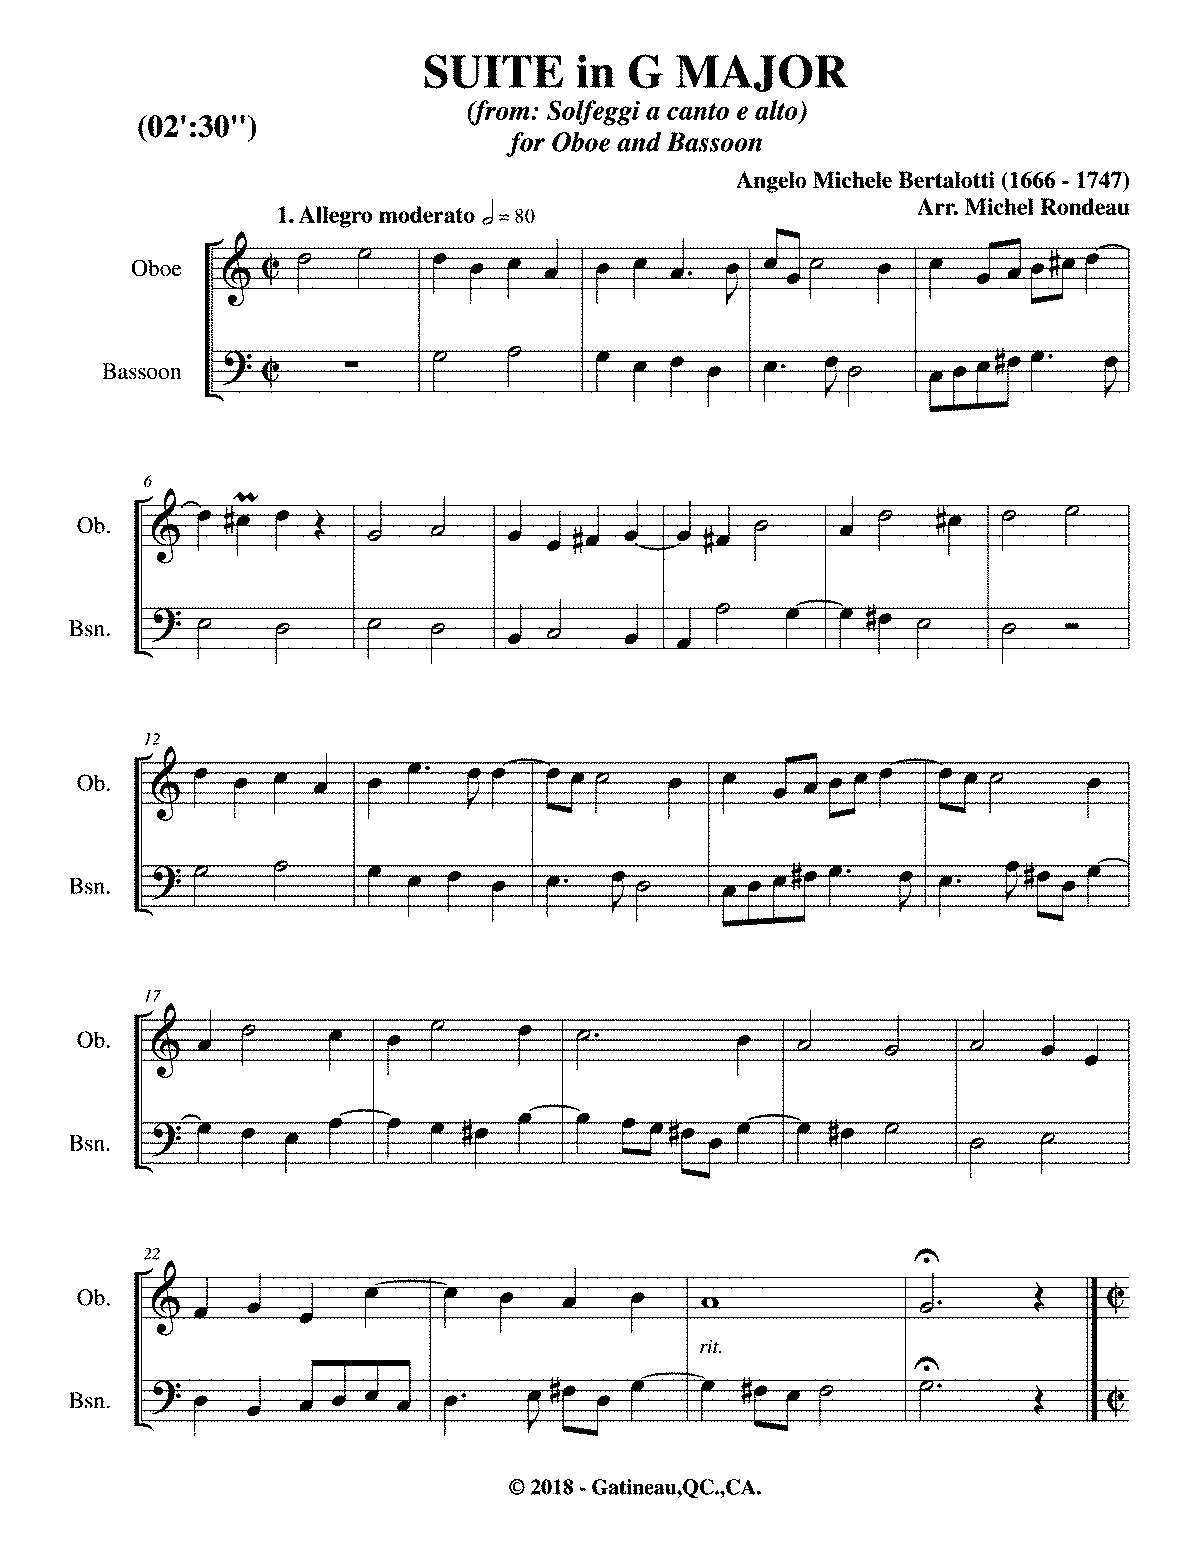 Solfeggio - Caput Mundi Accademia Musicale